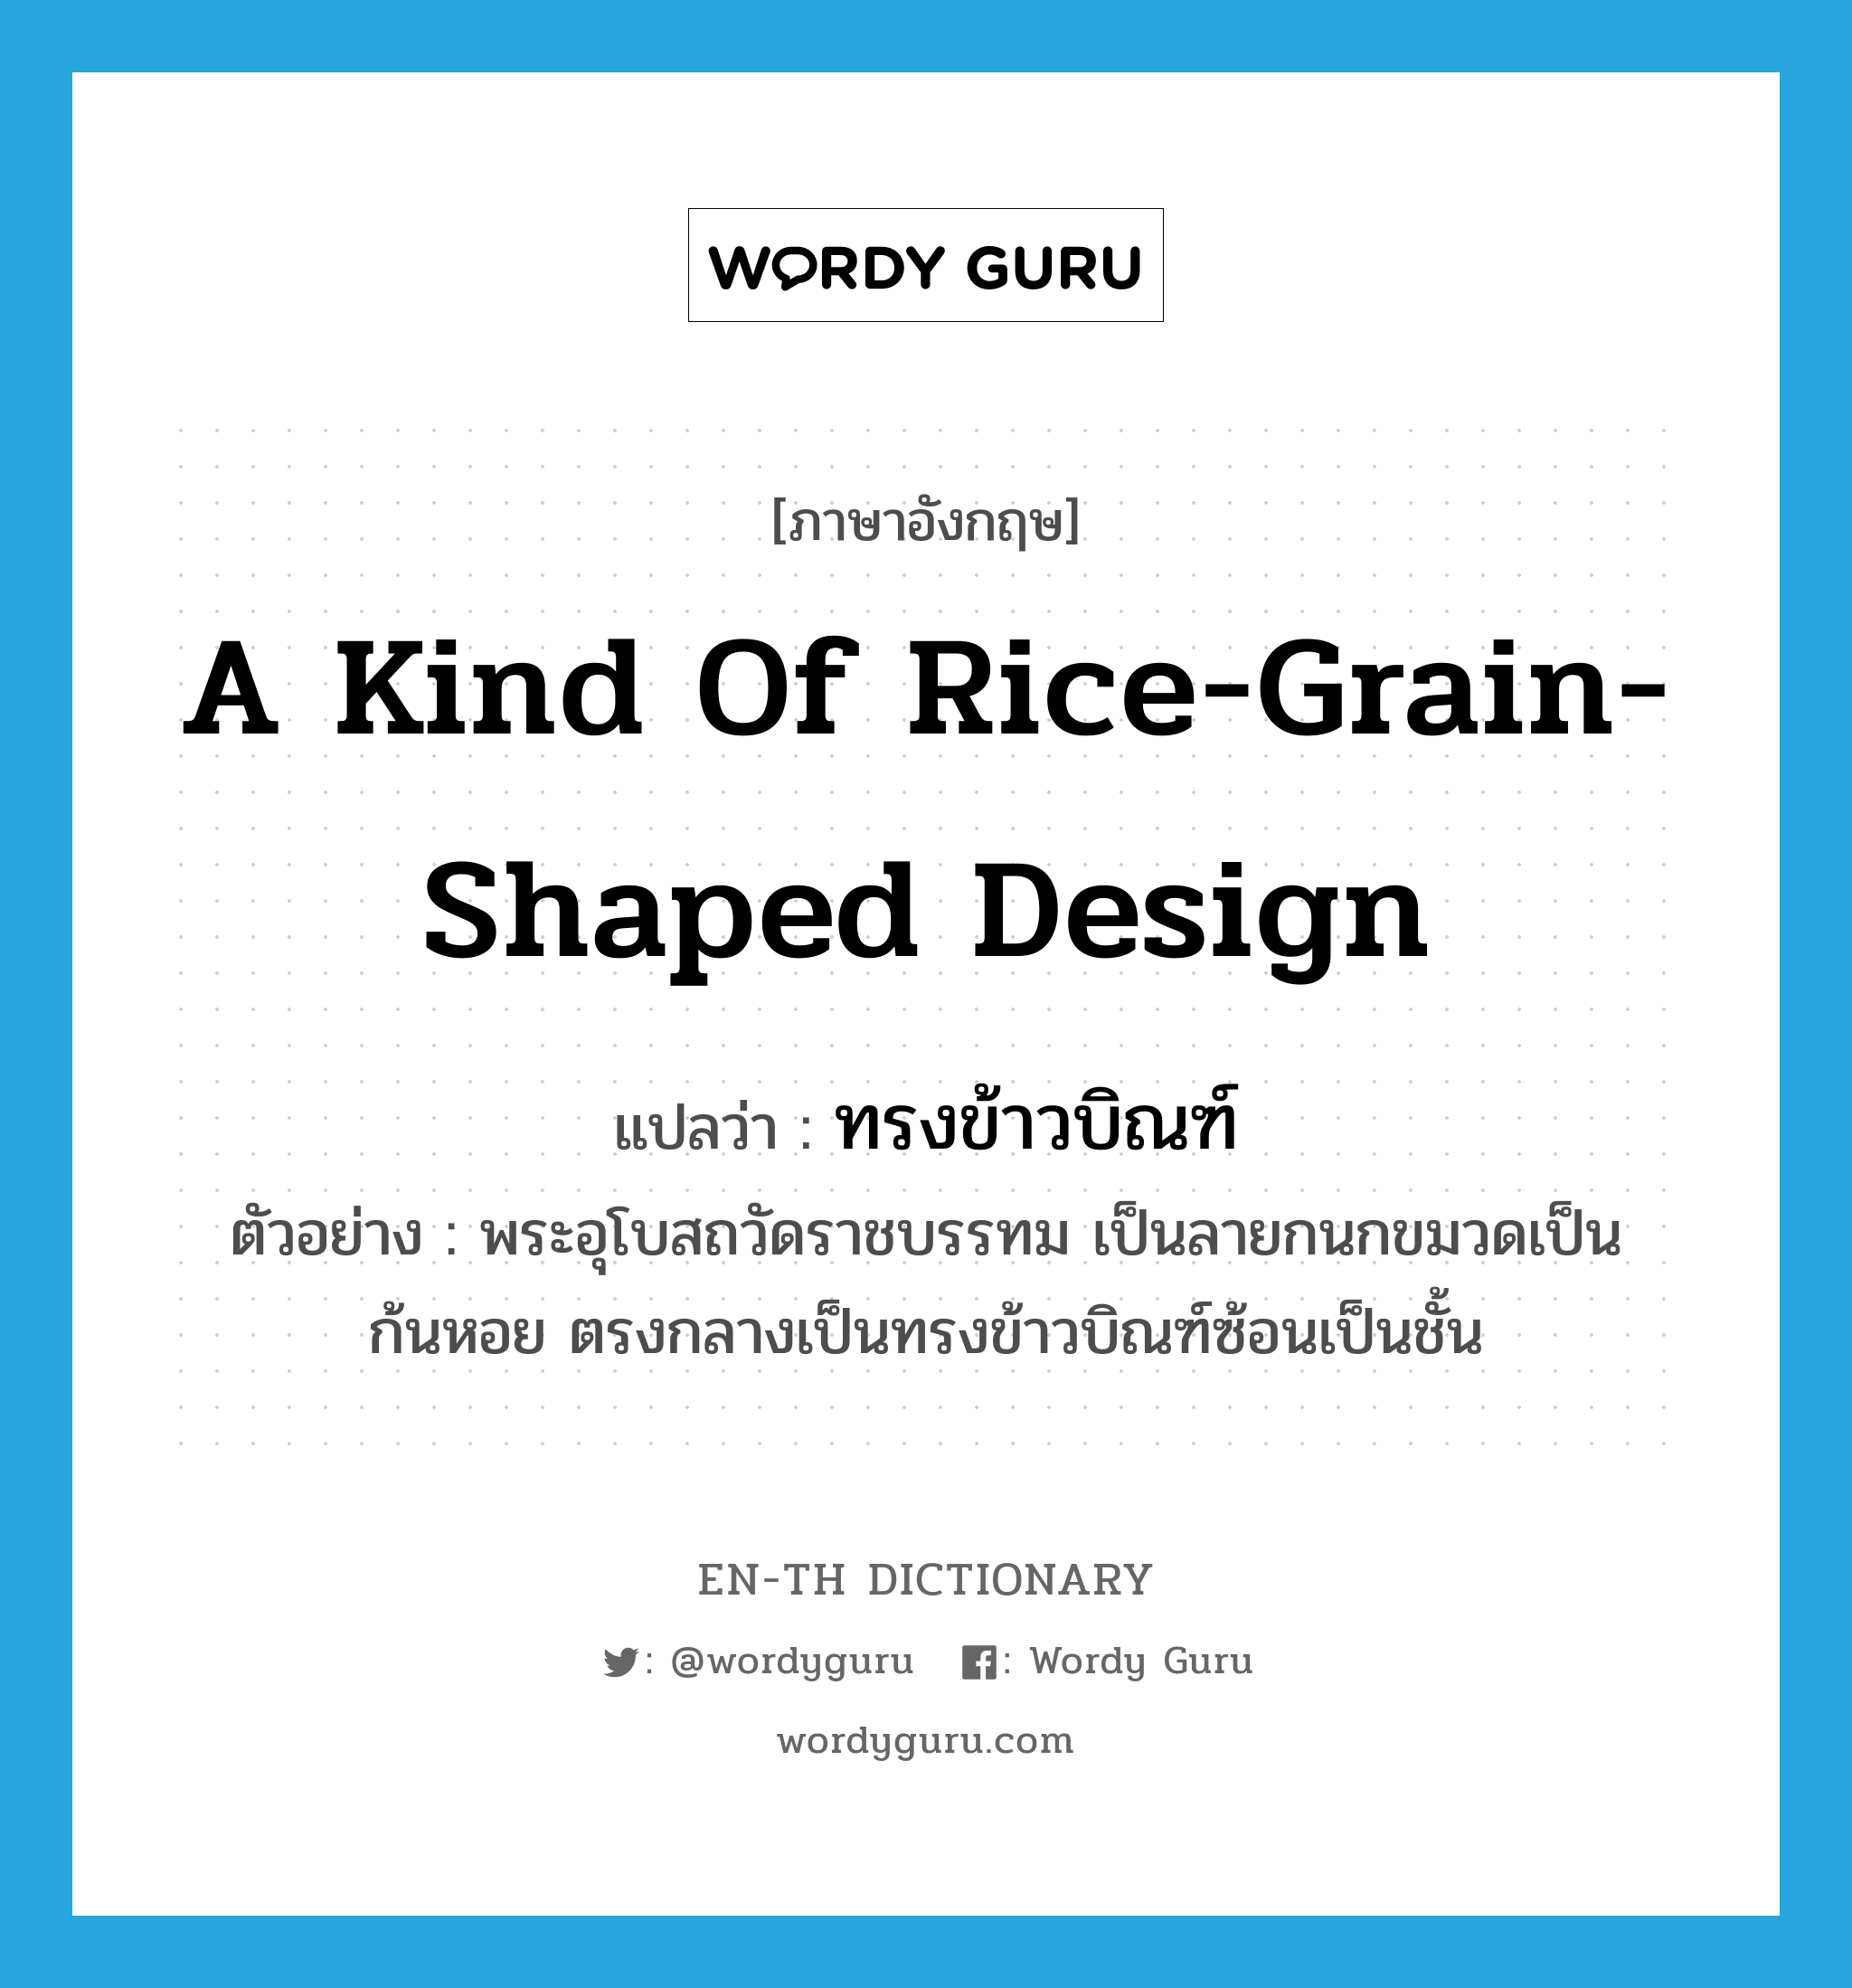 a kind of rice-grain-shaped design แปลว่า? คำศัพท์ในกลุ่มประเภท N, คำศัพท์ภาษาอังกฤษ a kind of rice-grain-shaped design แปลว่า ทรงข้าวบิณฑ์ ประเภท N ตัวอย่าง พระอุโบสถวัดราชบรรทม เป็นลายกนกขมวดเป็นก้นหอย ตรงกลางเป็นทรงข้าวบิณฑ์ซ้อนเป็นชั้น หมวด N